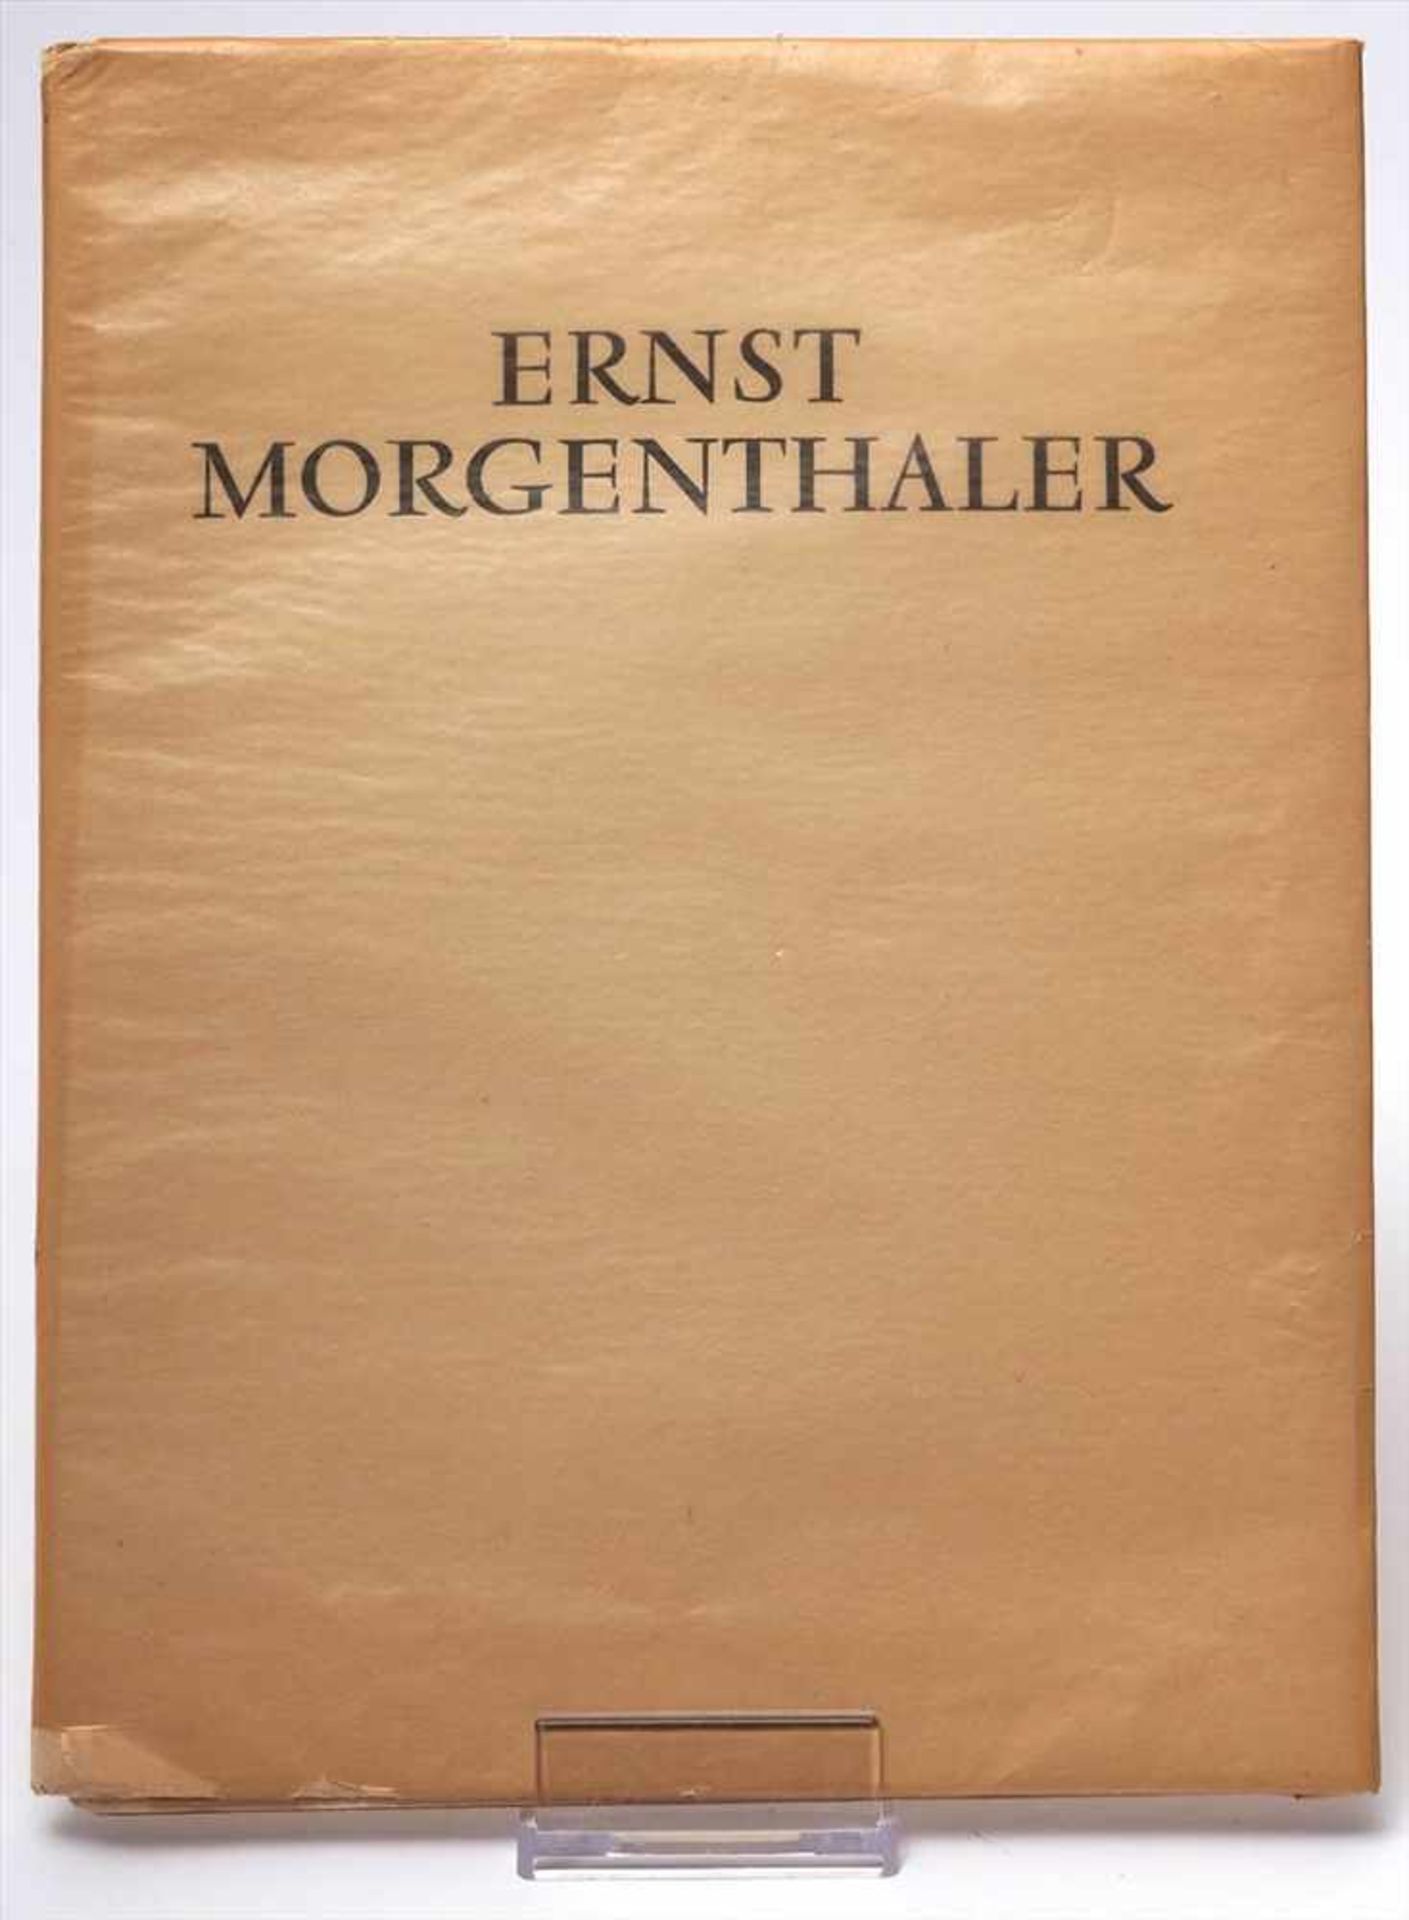 Morgenthaler, Ernst, 1887 - 1962Mappe mit Farbreroduktionen von Ölgemälden, Neuchâtel 1953.